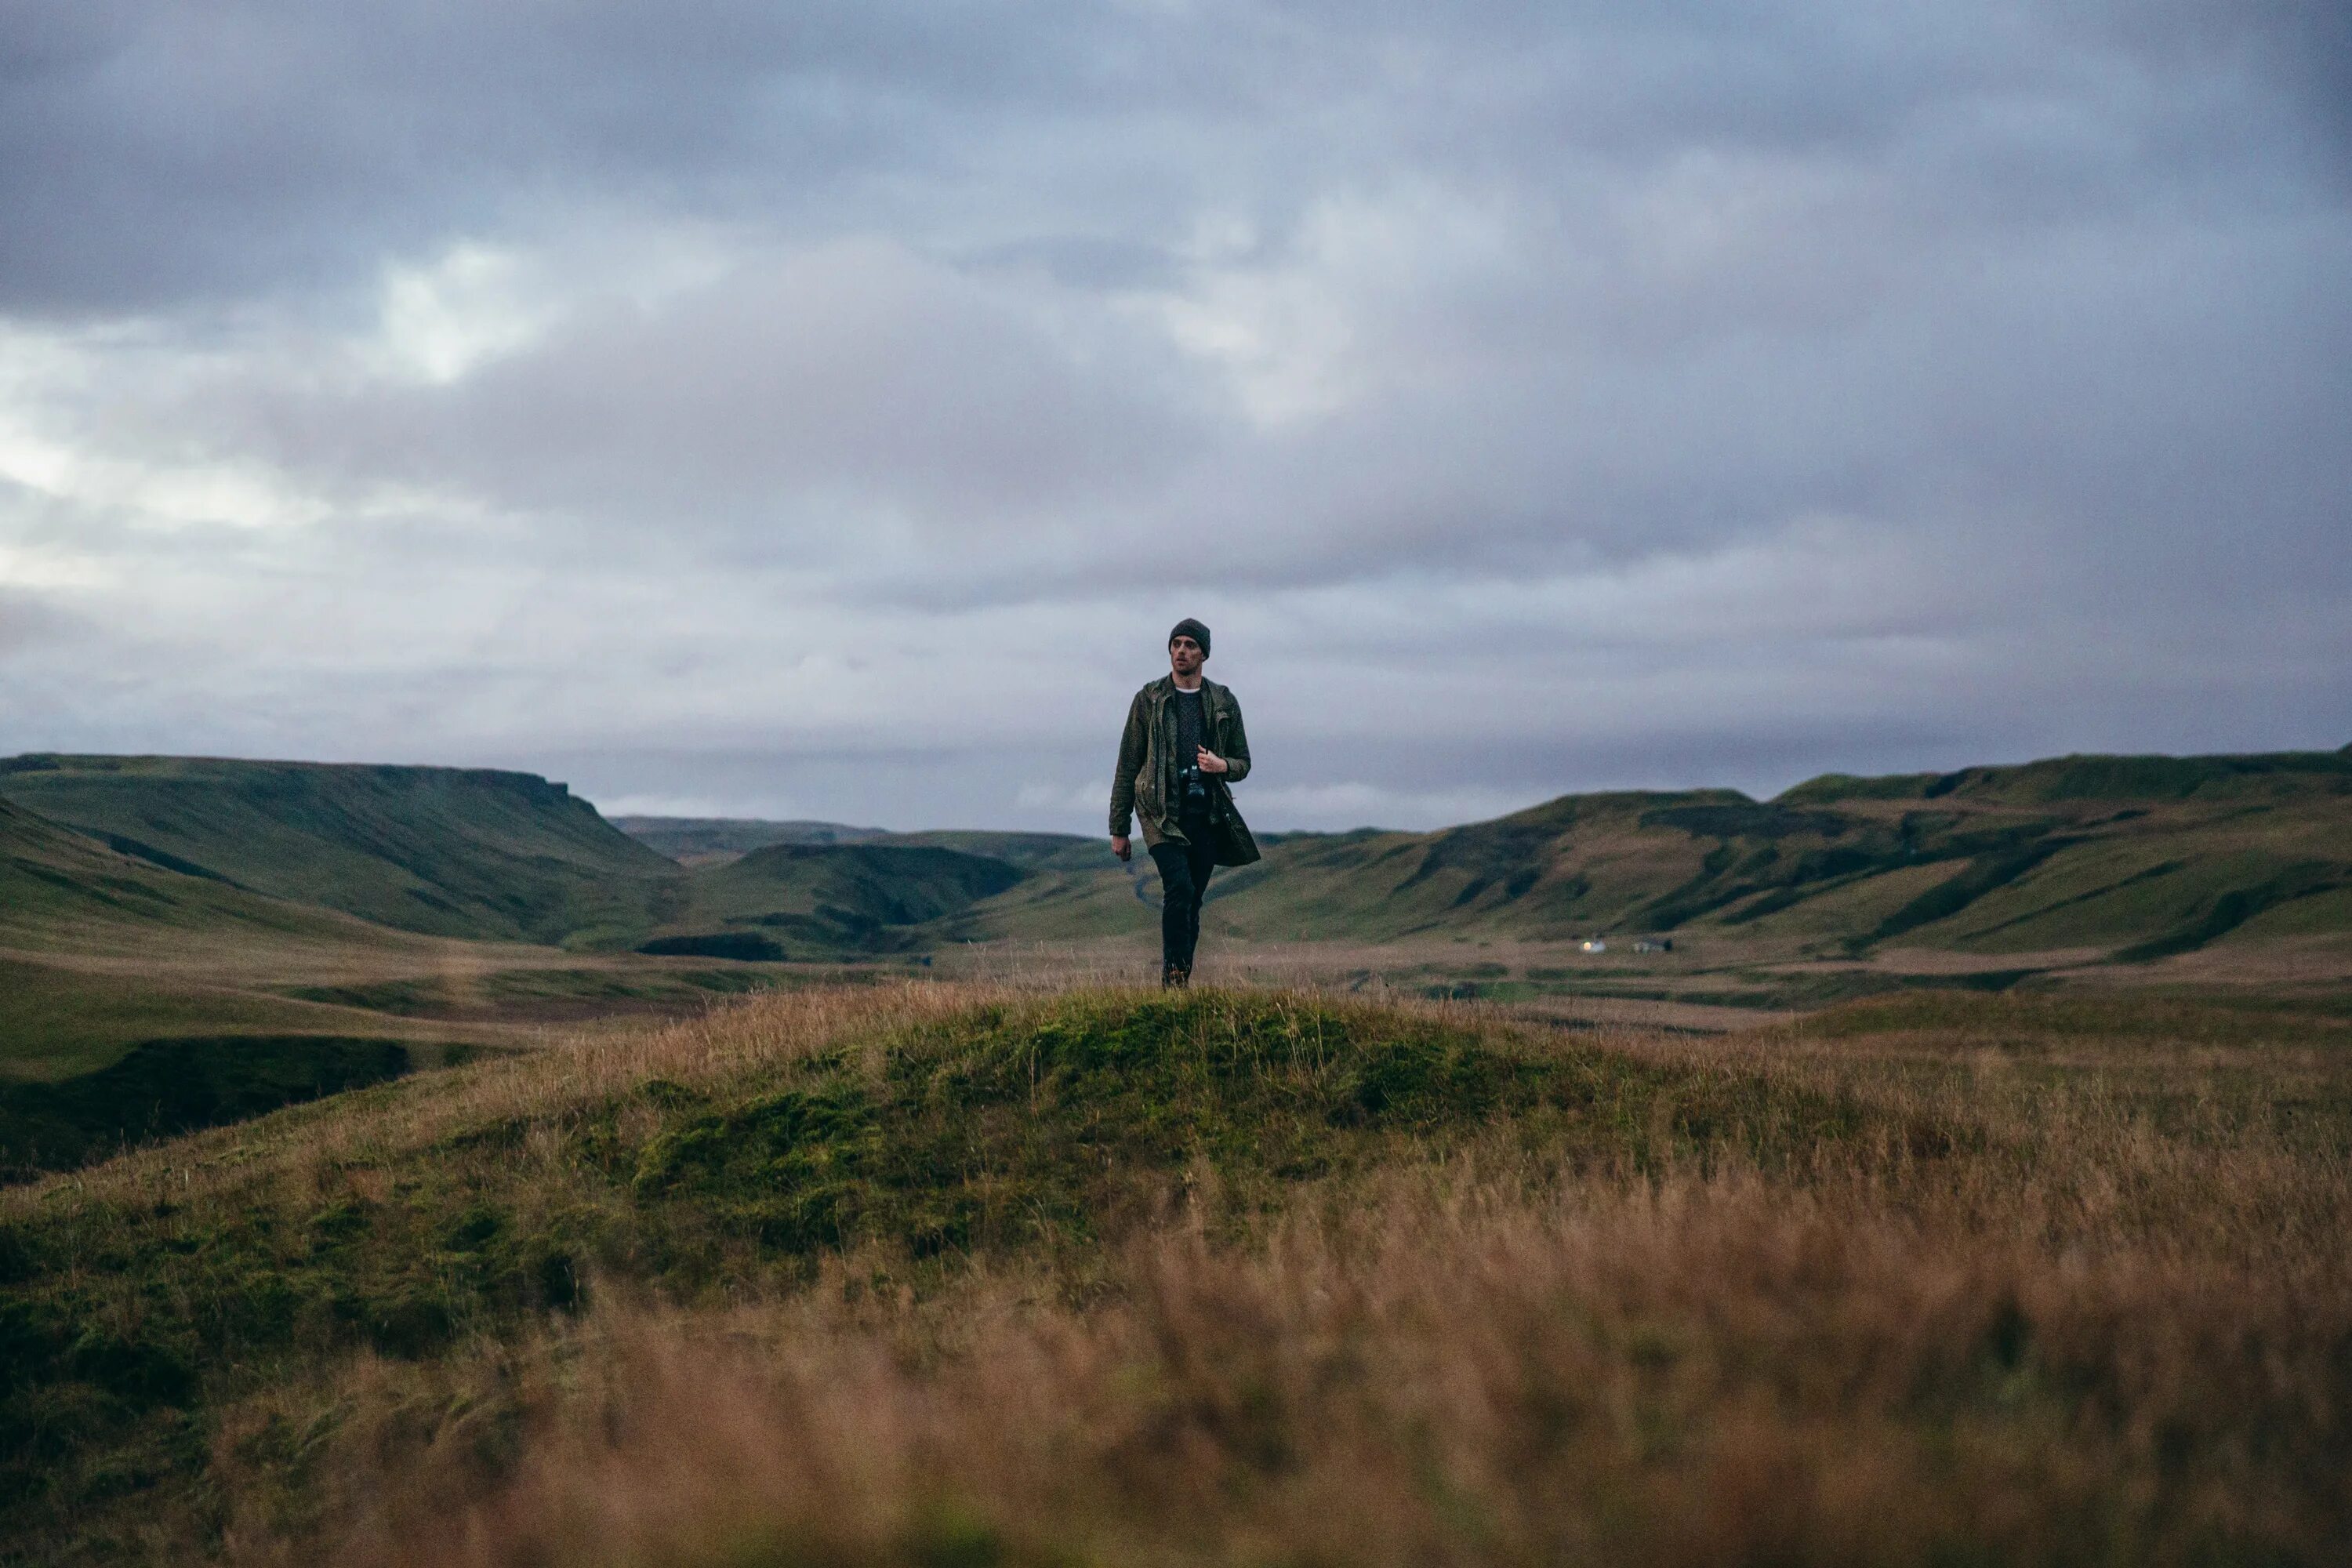 Великие холмы. Поле с скалистыми холмами. Исландия поля. Фото мужчина в степи делает фото.